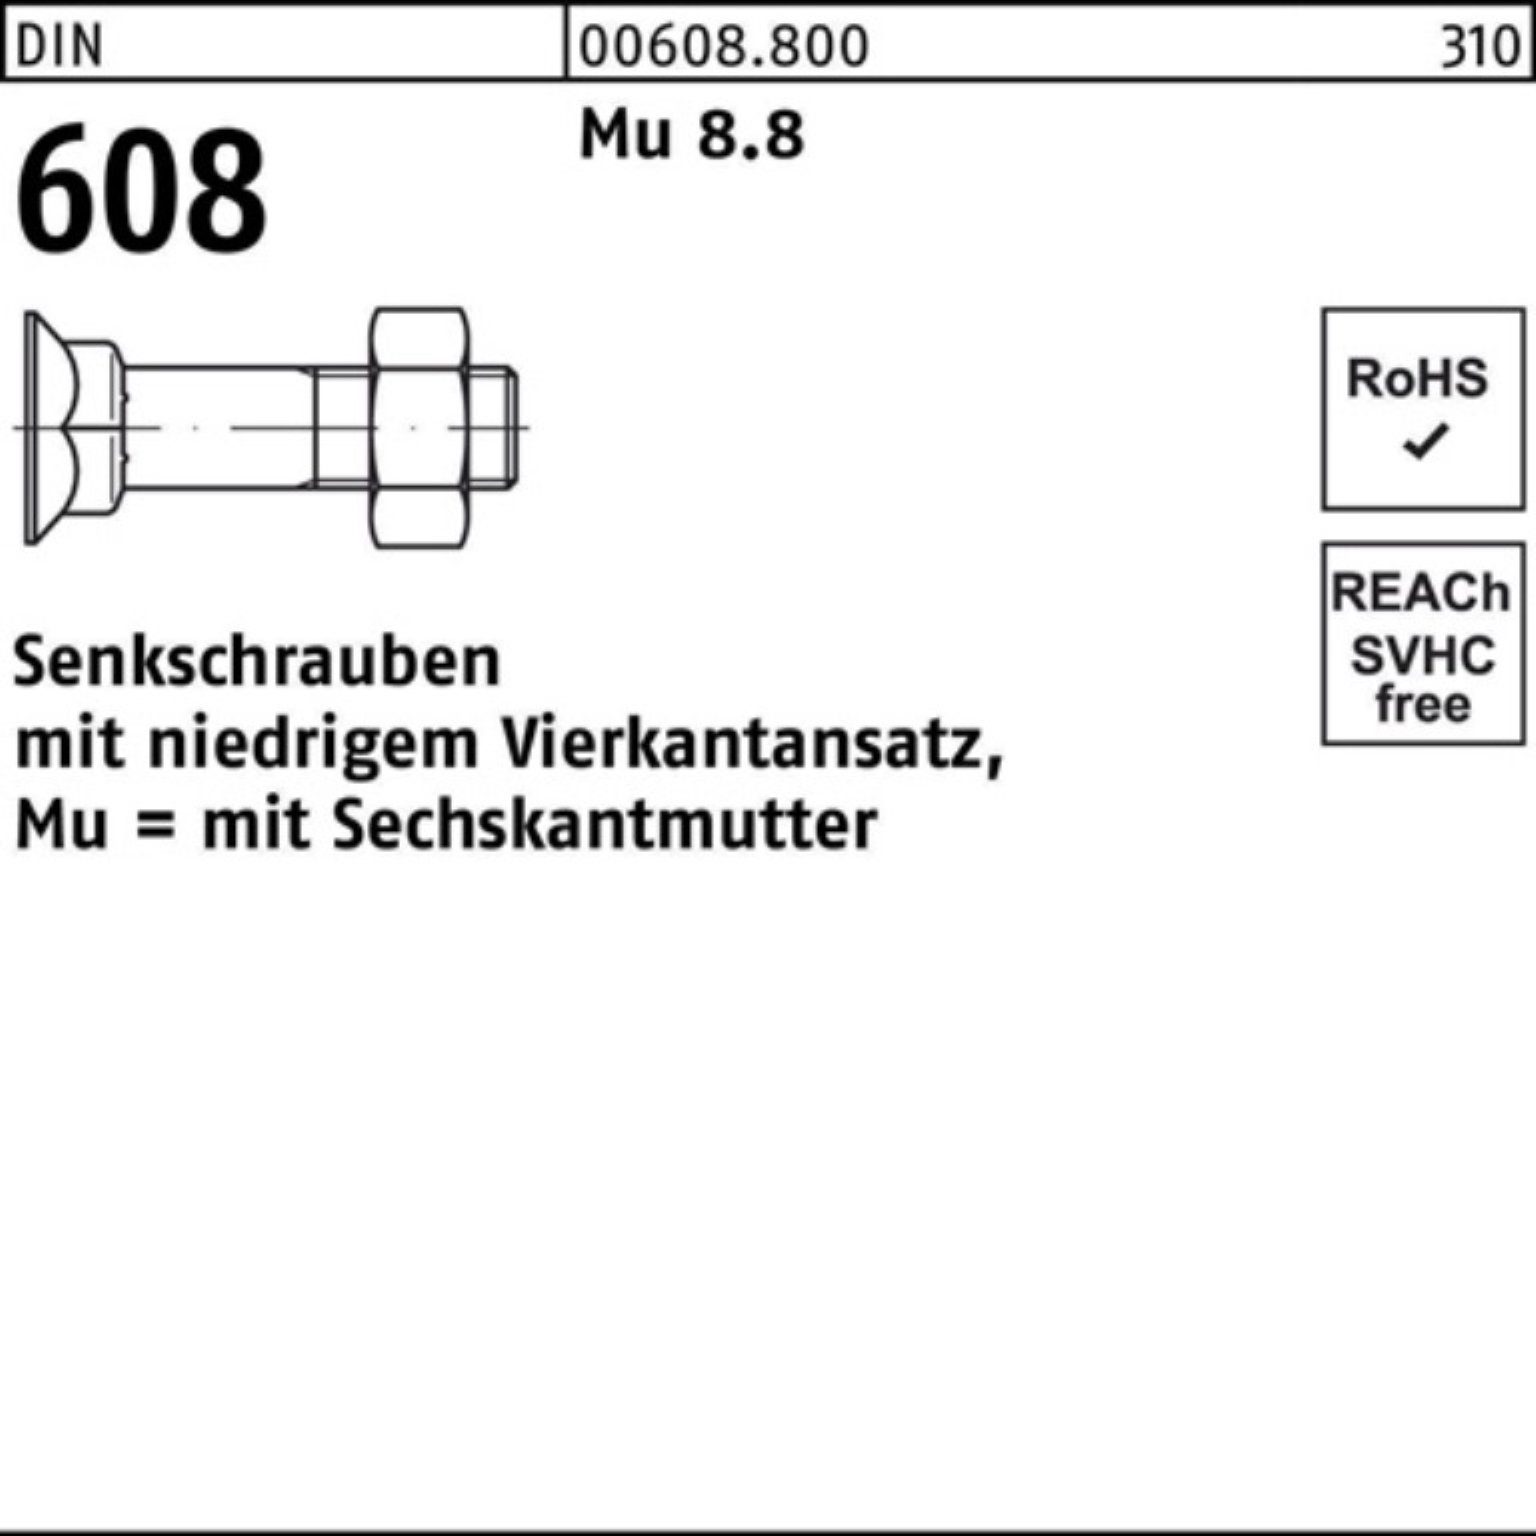 Reyher Senkschraube 200er 8.8 DIN 4-ktansatz/6-ktmutter Mu 608 M8x 30 Senkschraube Pack 20